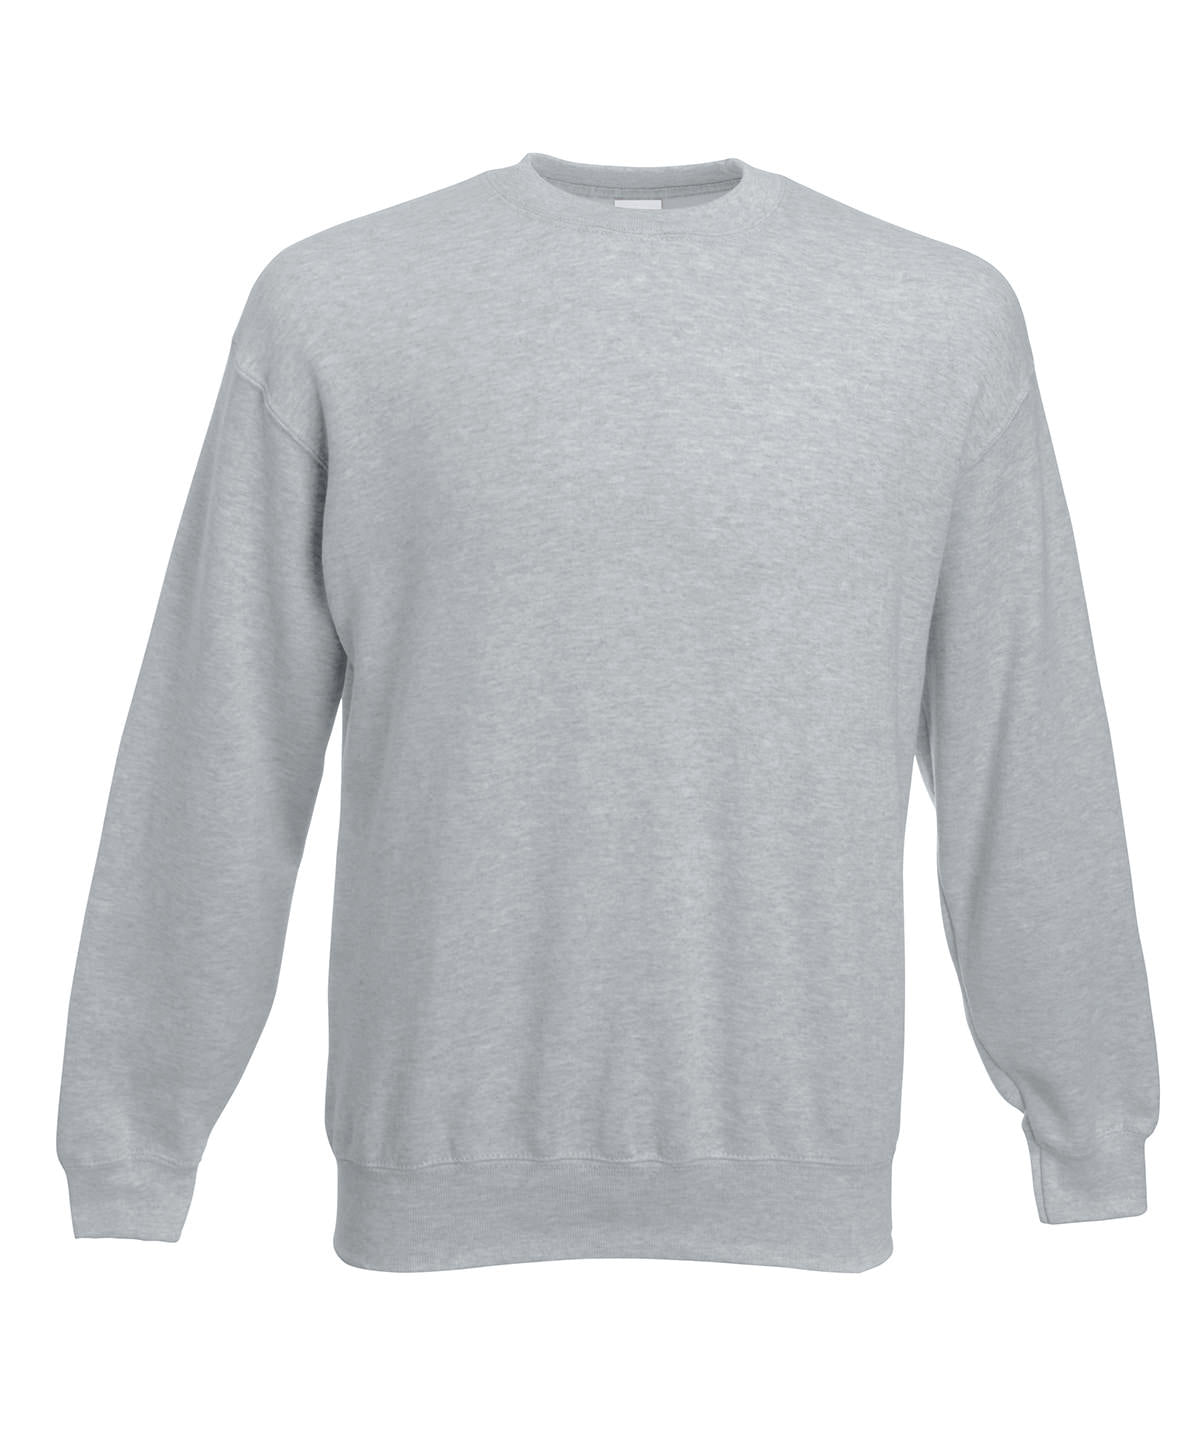 Personalised Sweatshirts - Burgundy Fruit of the Loom Premium 70/30 set-in sweatshirt